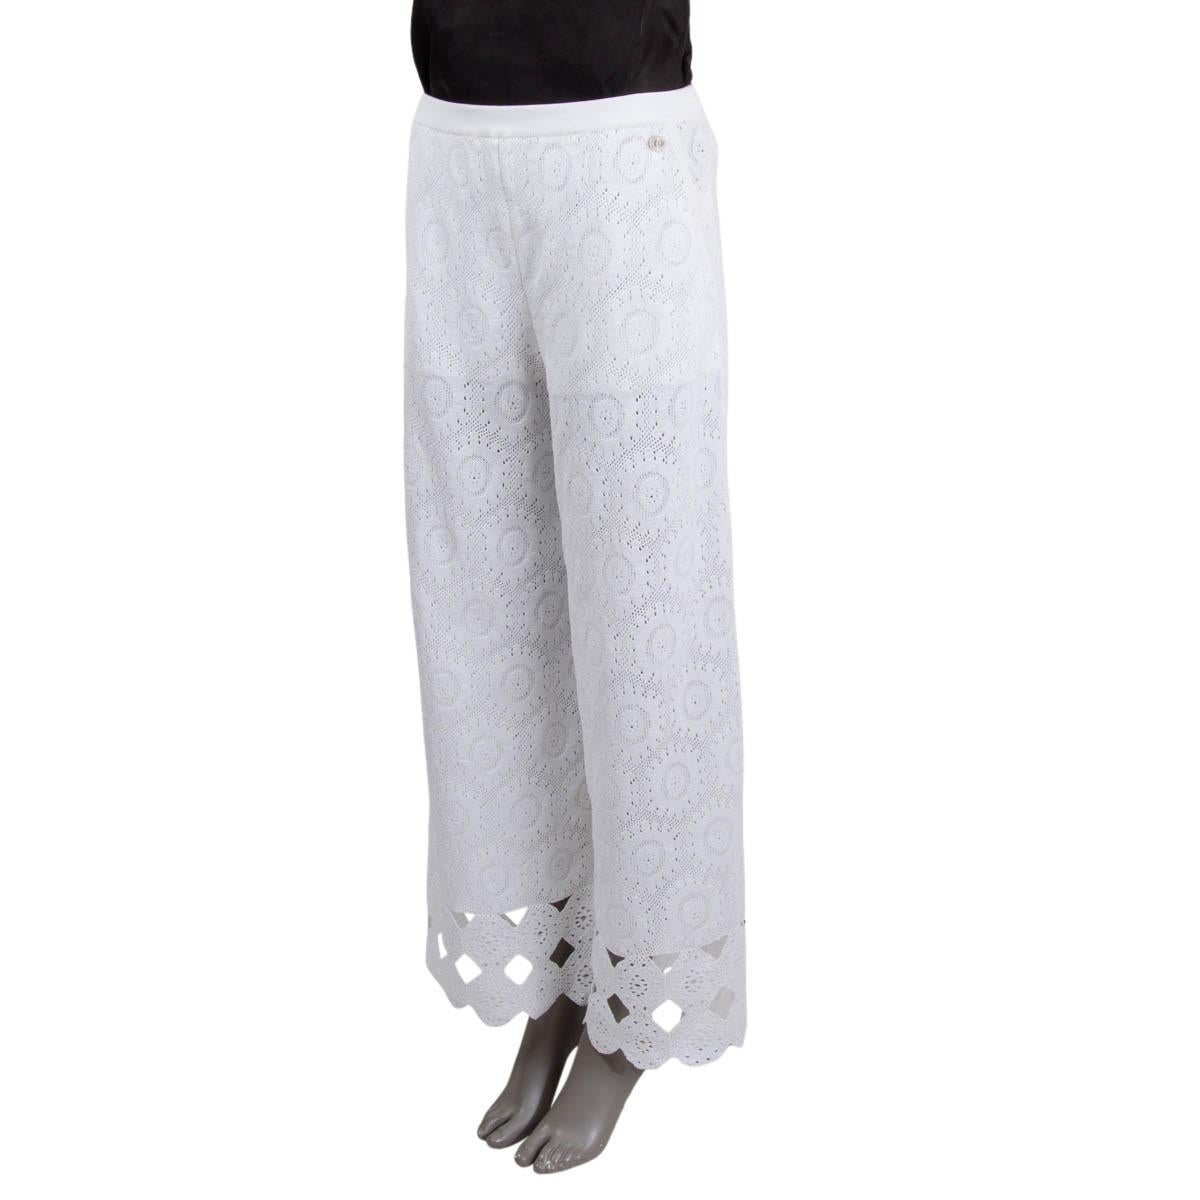 100% authentique Chanel 2020 pantalon taille haute jambe large en crochet tricoté en coton blanc (99%) et polyamide (1%) avec un ourlet festonné en bas. La partie supérieure est doublée et les jambes sont transparentes. Le modèle est doté de deux